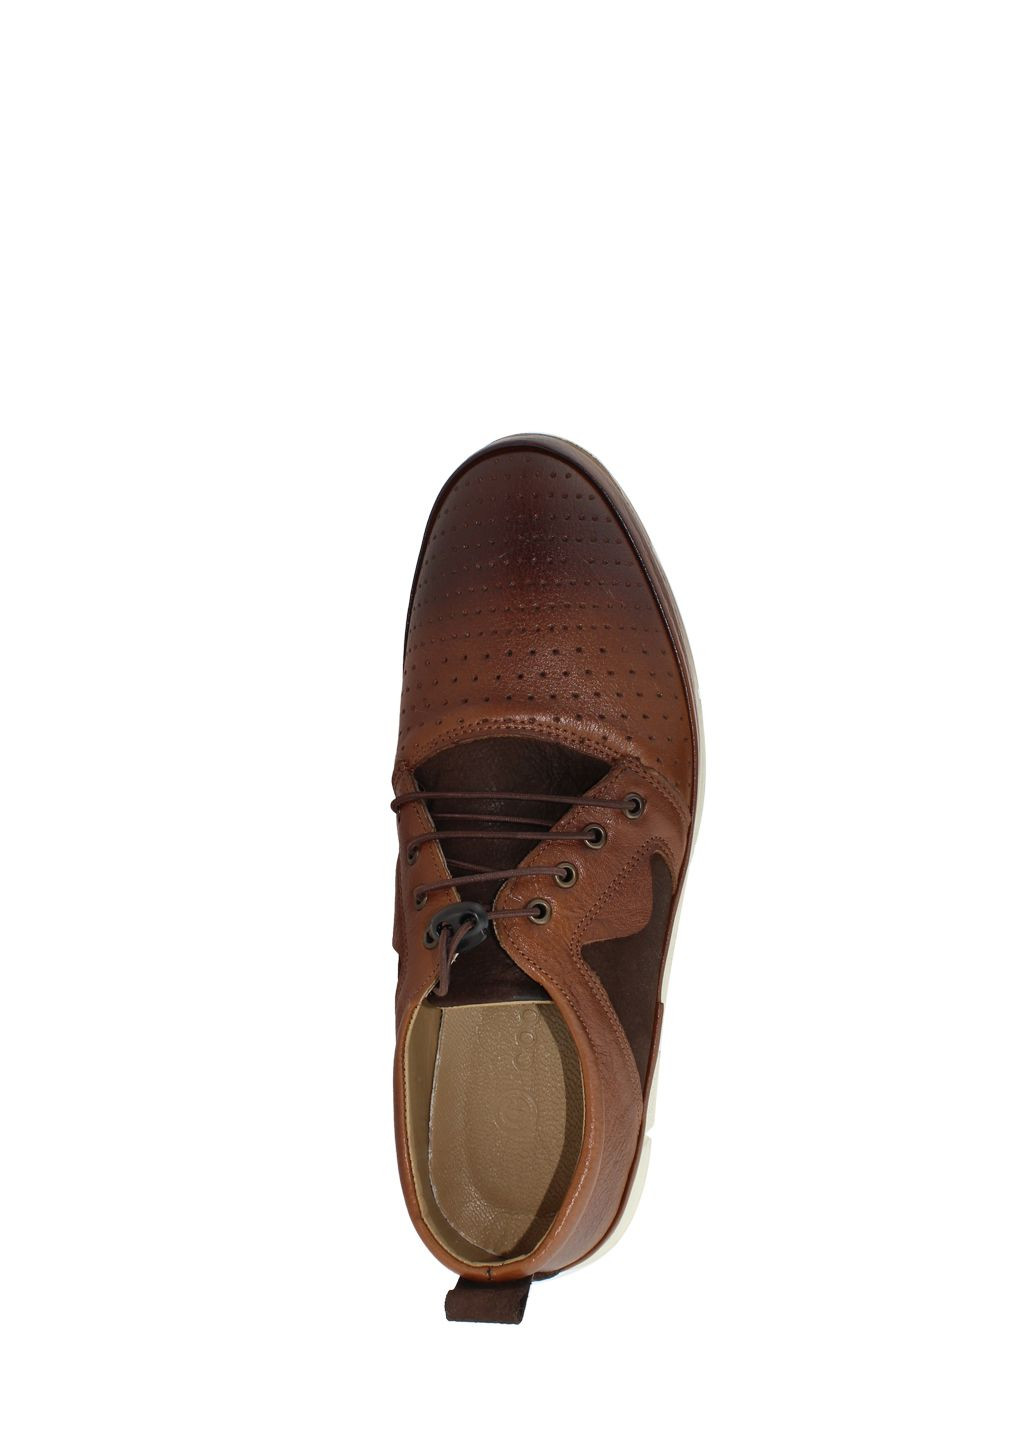 Коричневые туфли g1015.02 коричневый Goover